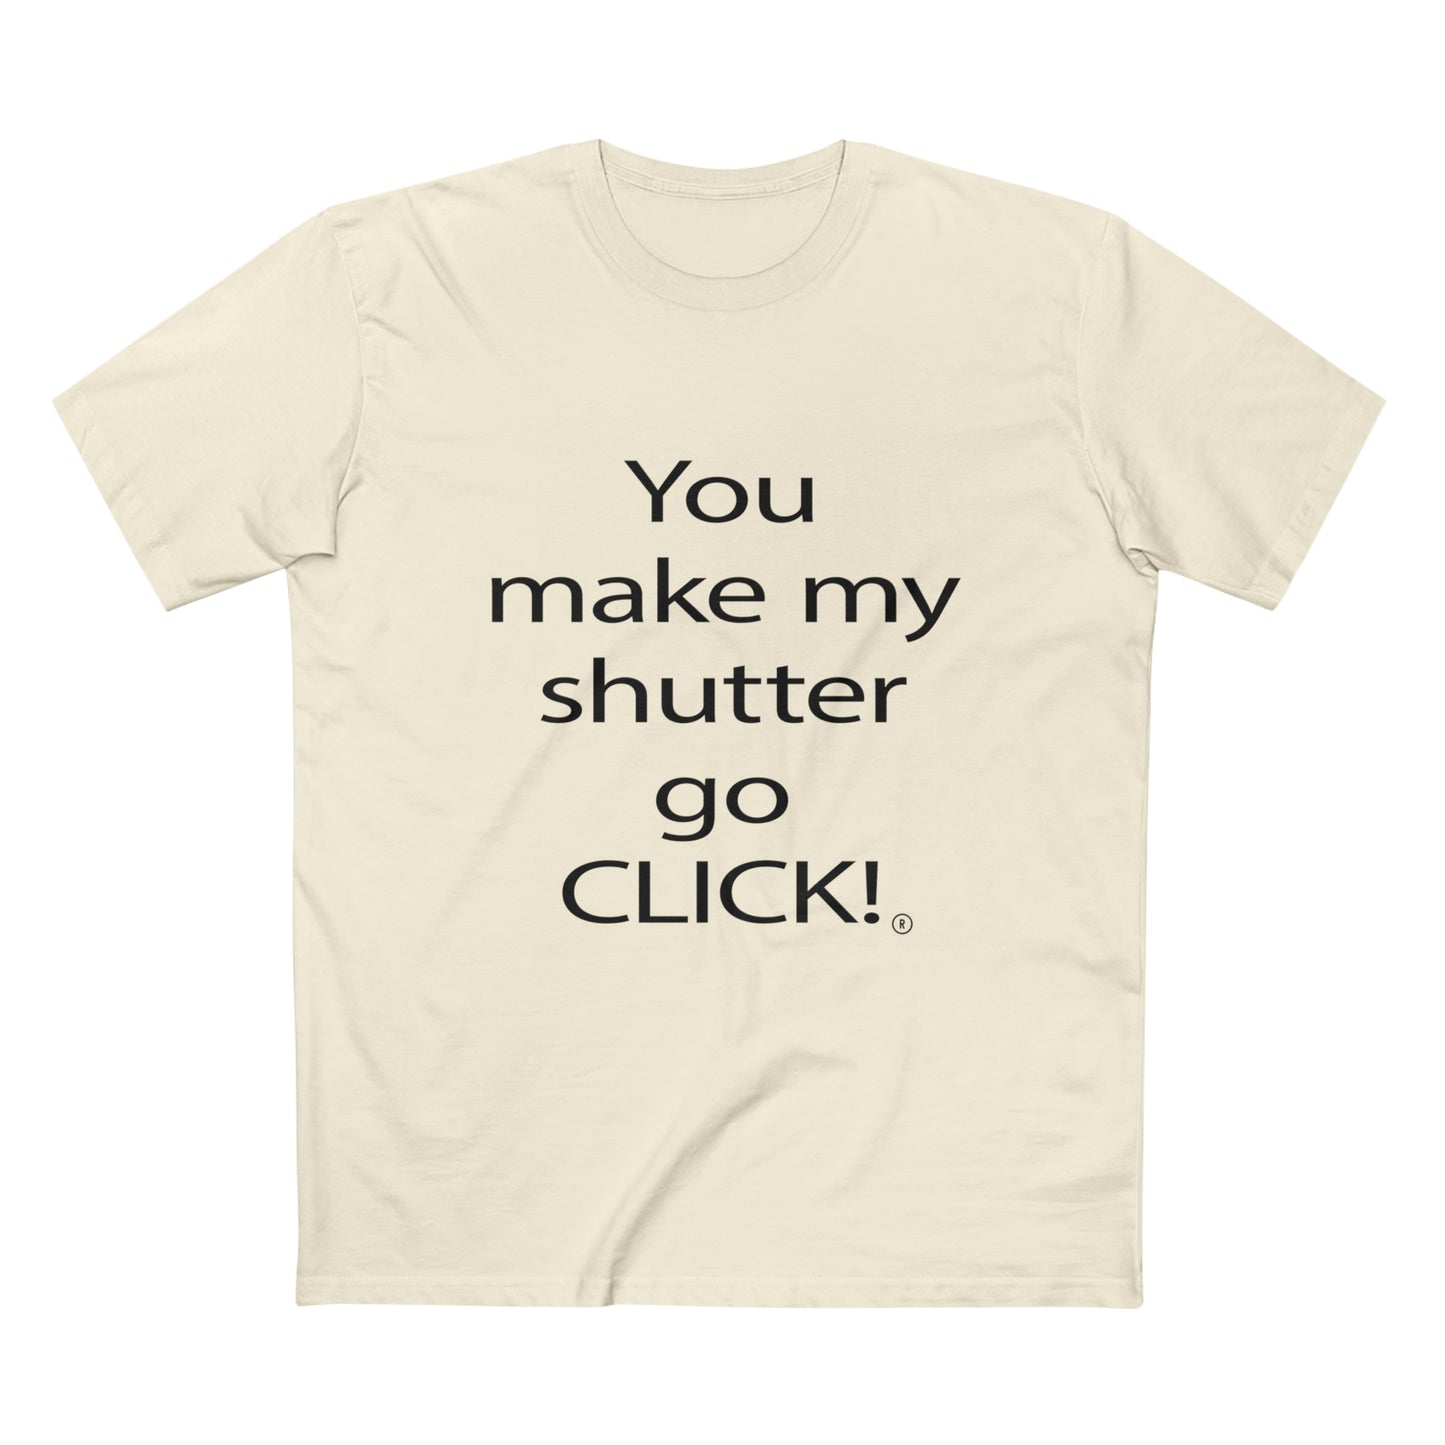 You make my shutter go CLICK!® - Men's Staple Tee